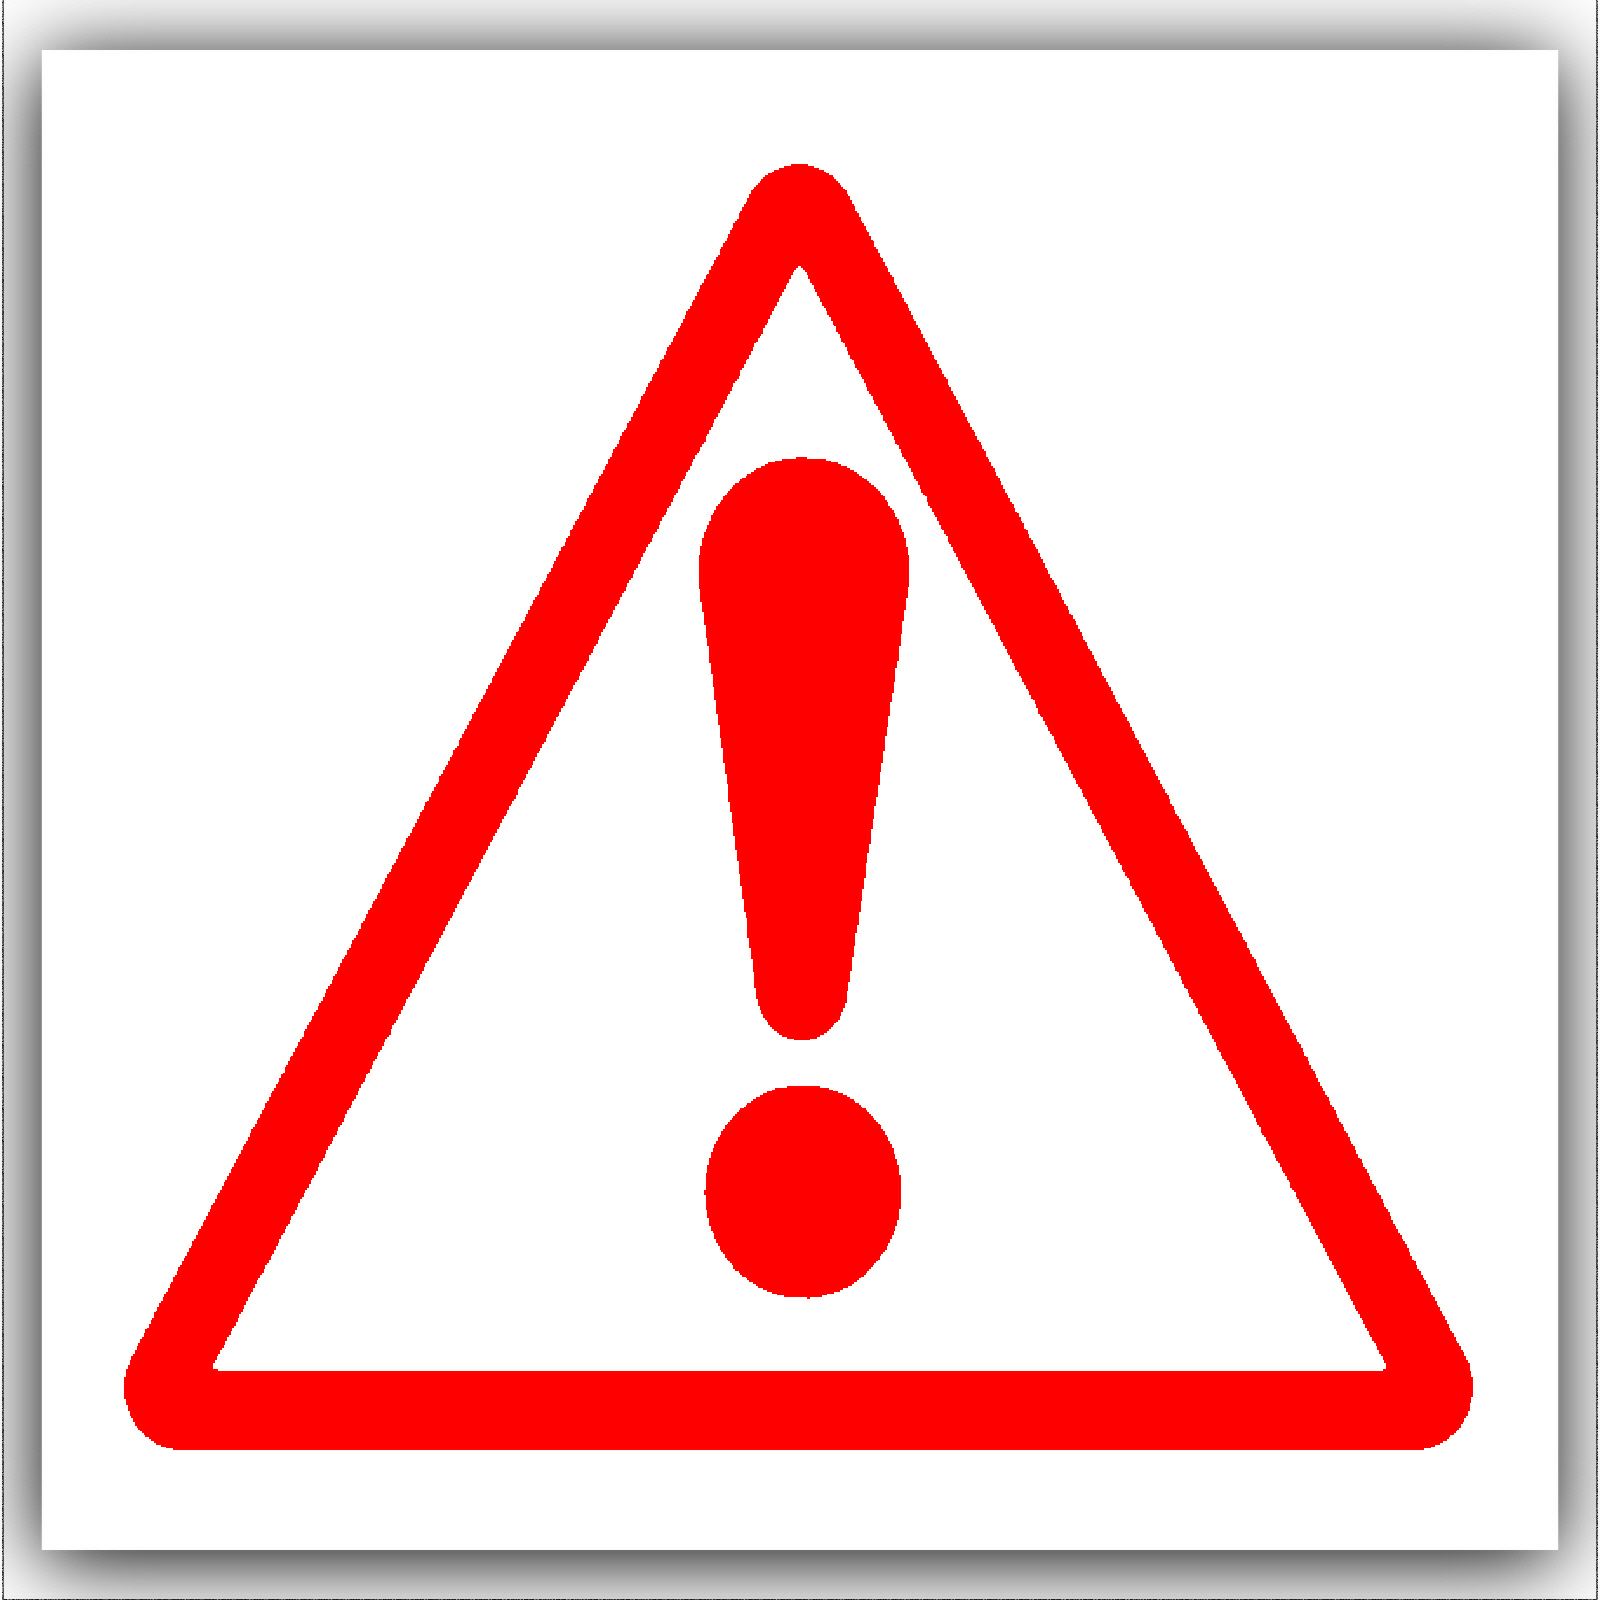 Caution Warning Danger Symbol-Red on White External Self Adhesive ...